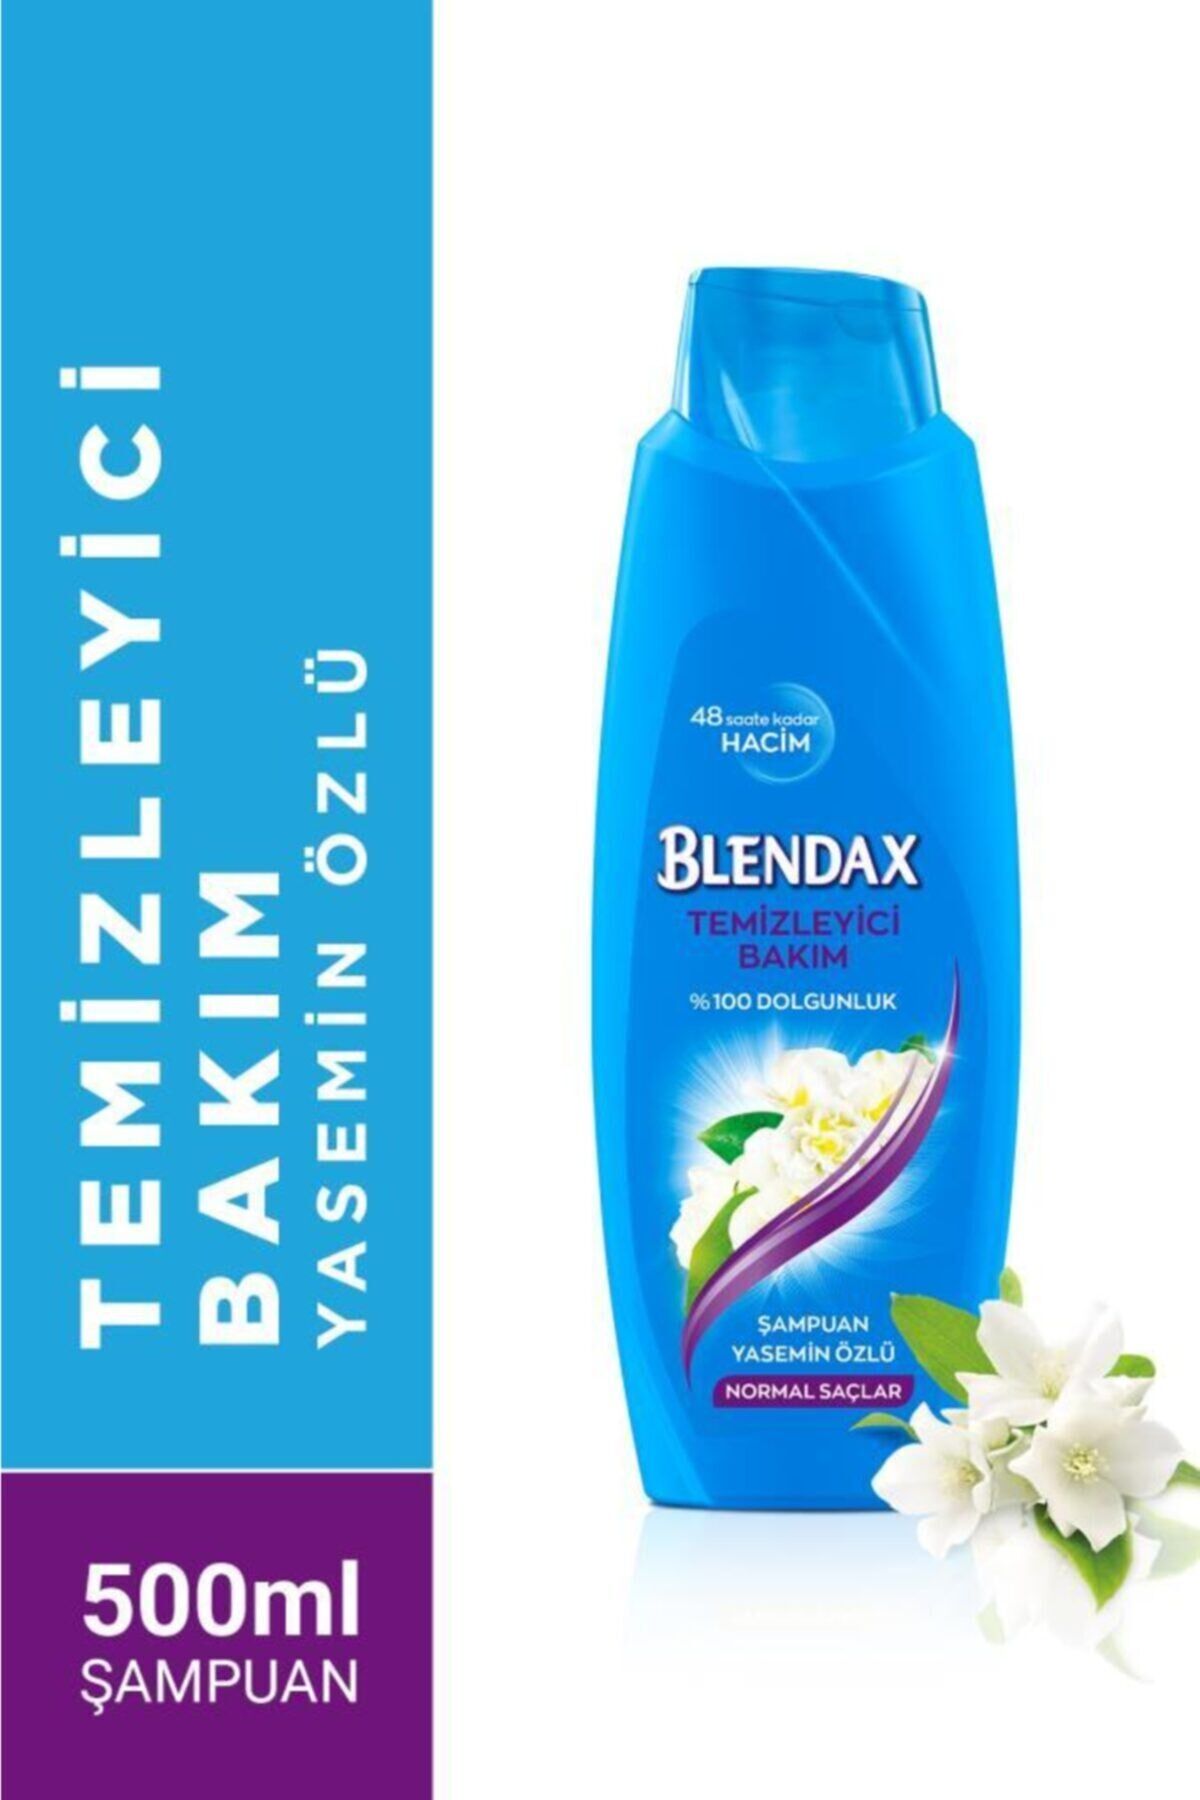 Blendax Temizleyici Bakım Yasemin Özlü Şampuan 500 ml